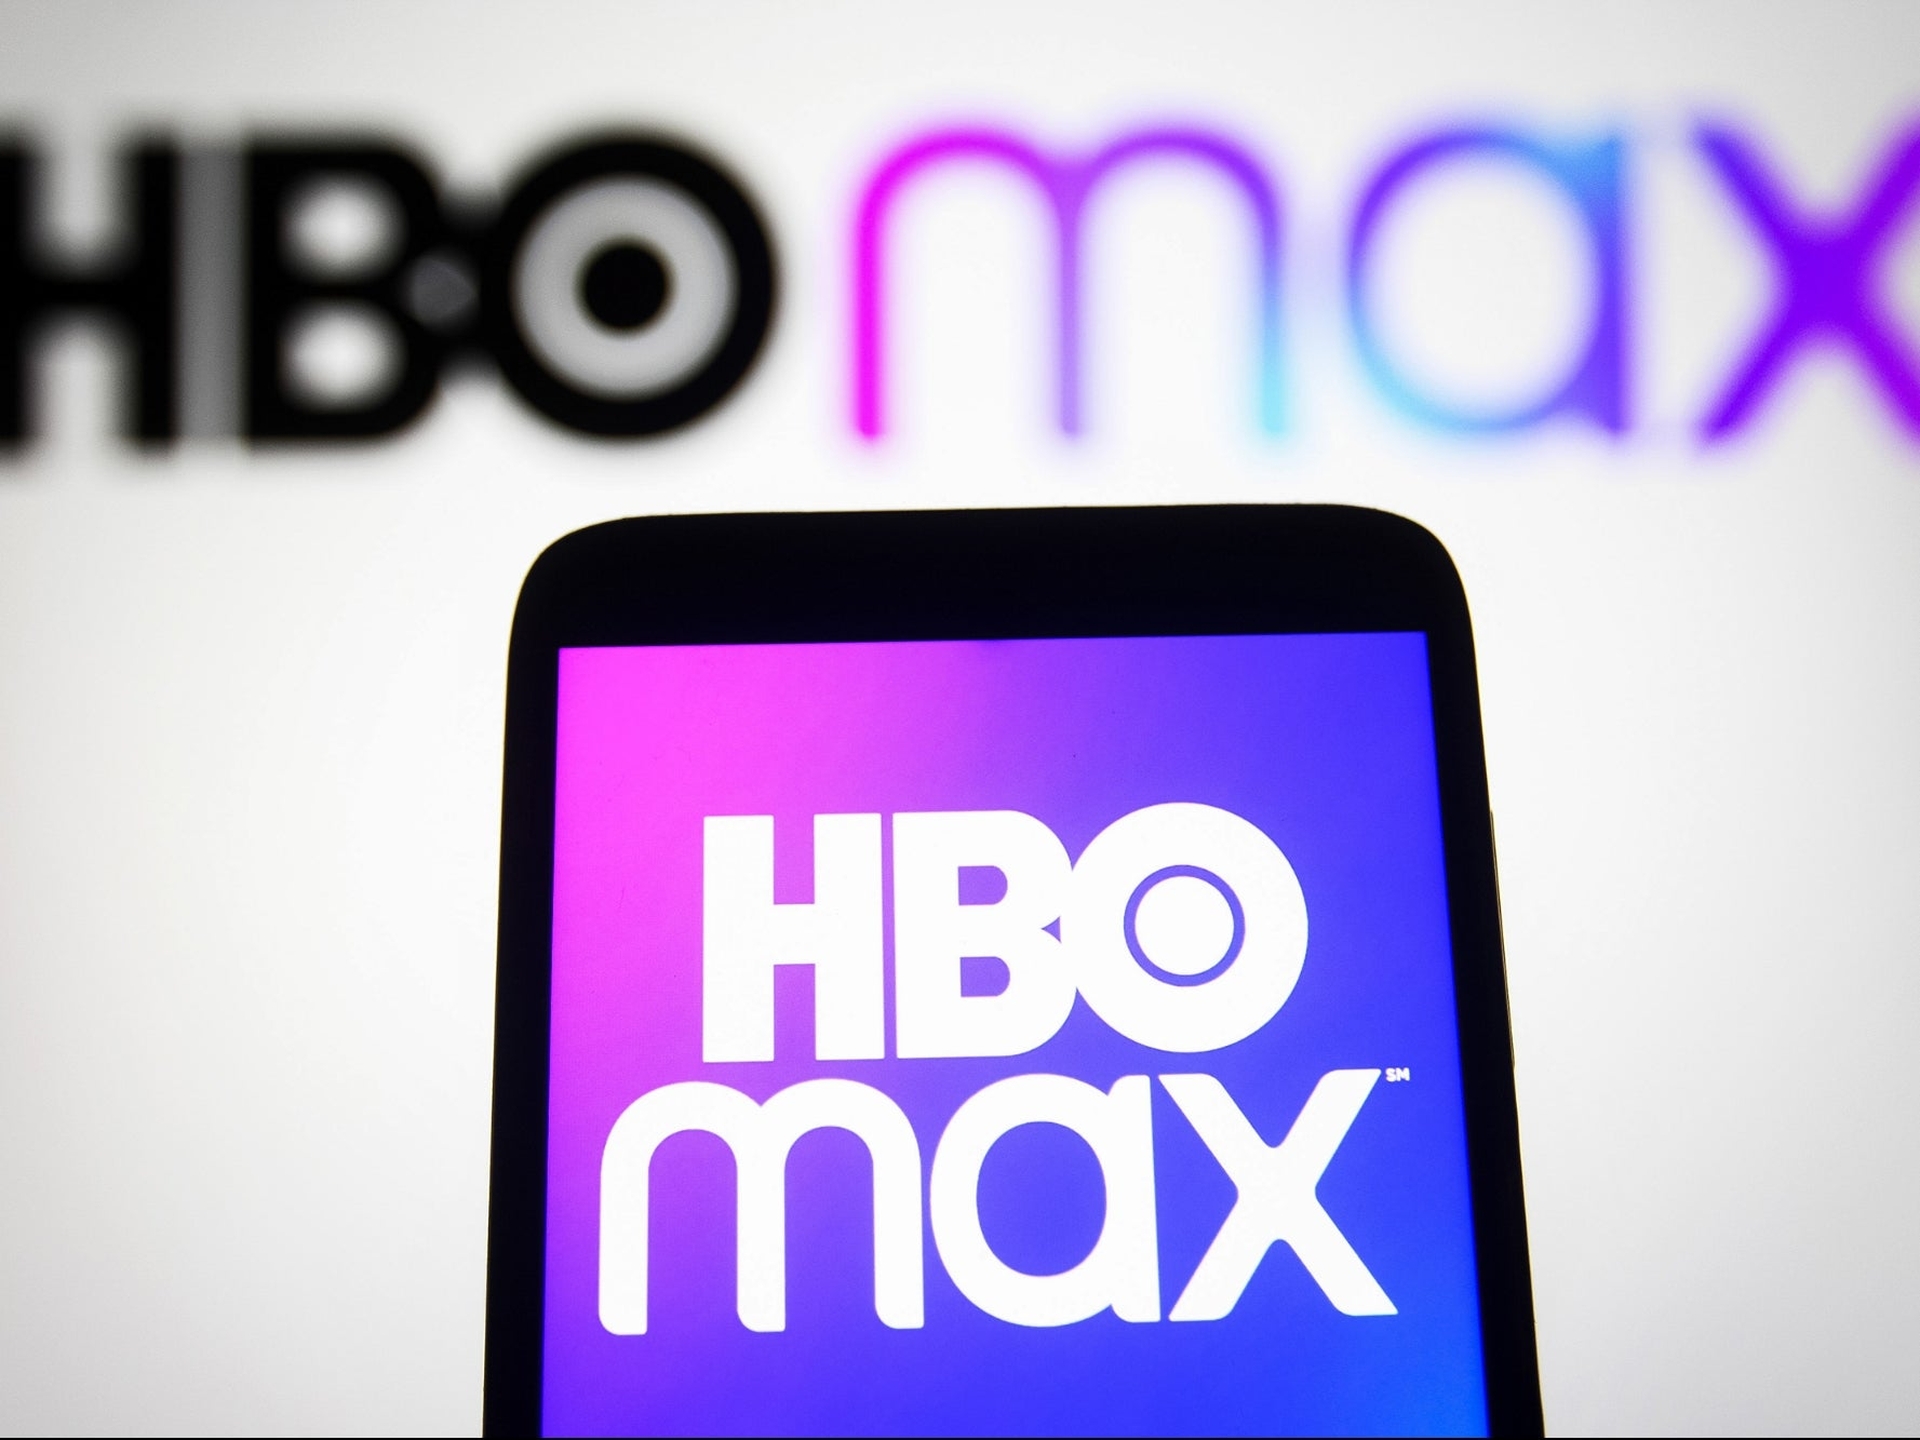 W tym artykule opiszemy, co dzieje się z HBO Max, jako HBO Max Discovery+, które w przyszłym roku połączy się pod nową nazwą.